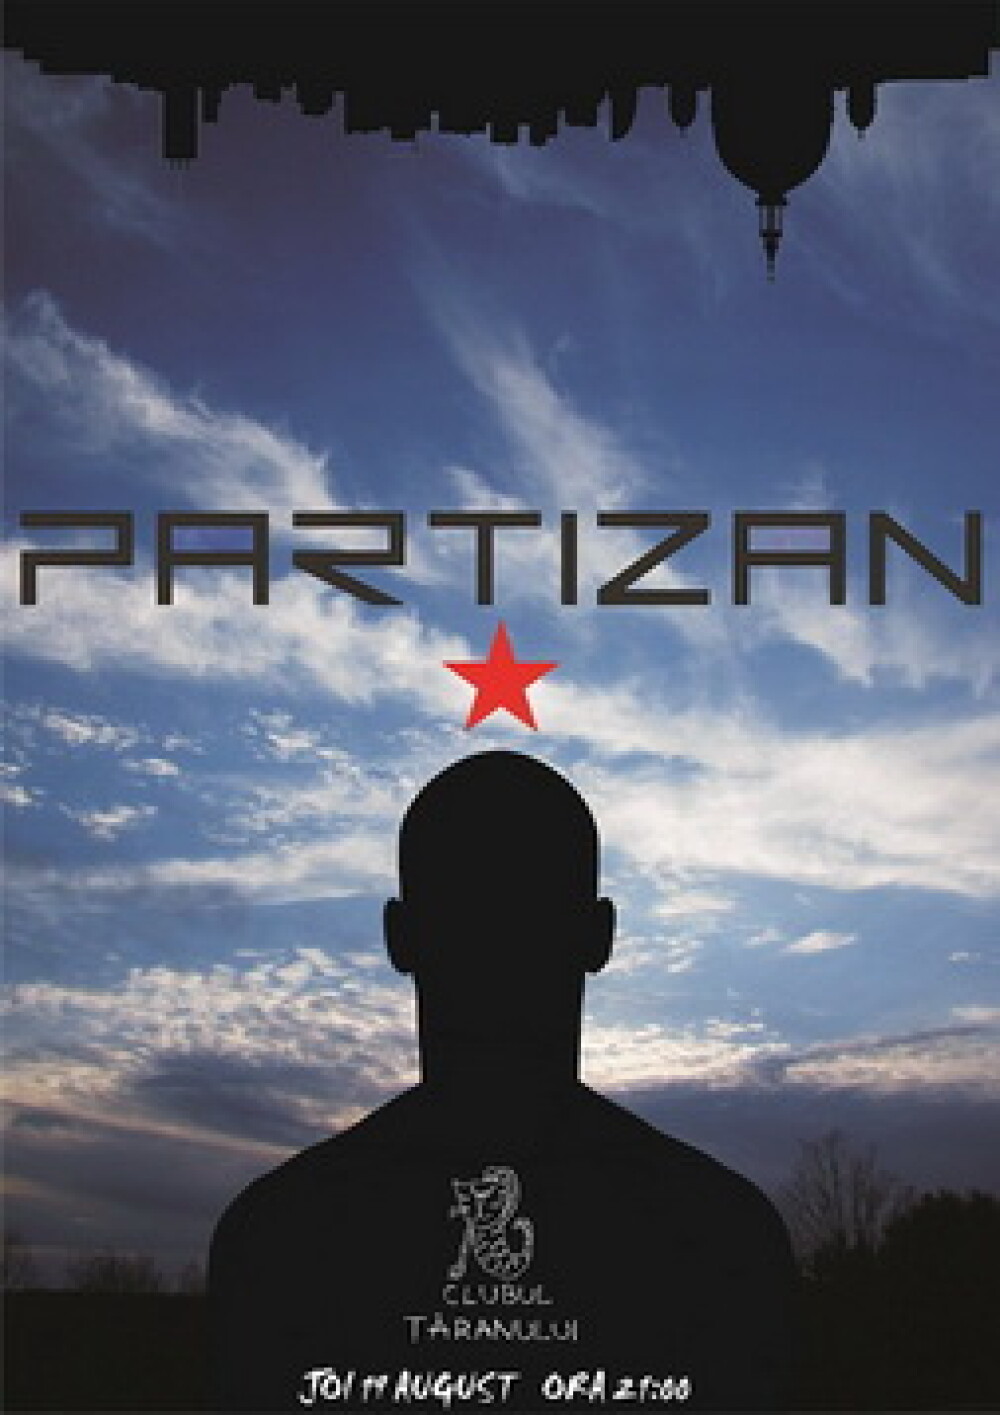 Trupa Partizan se intoarce pe scena, in frunte cu Artan - Imaginea 3